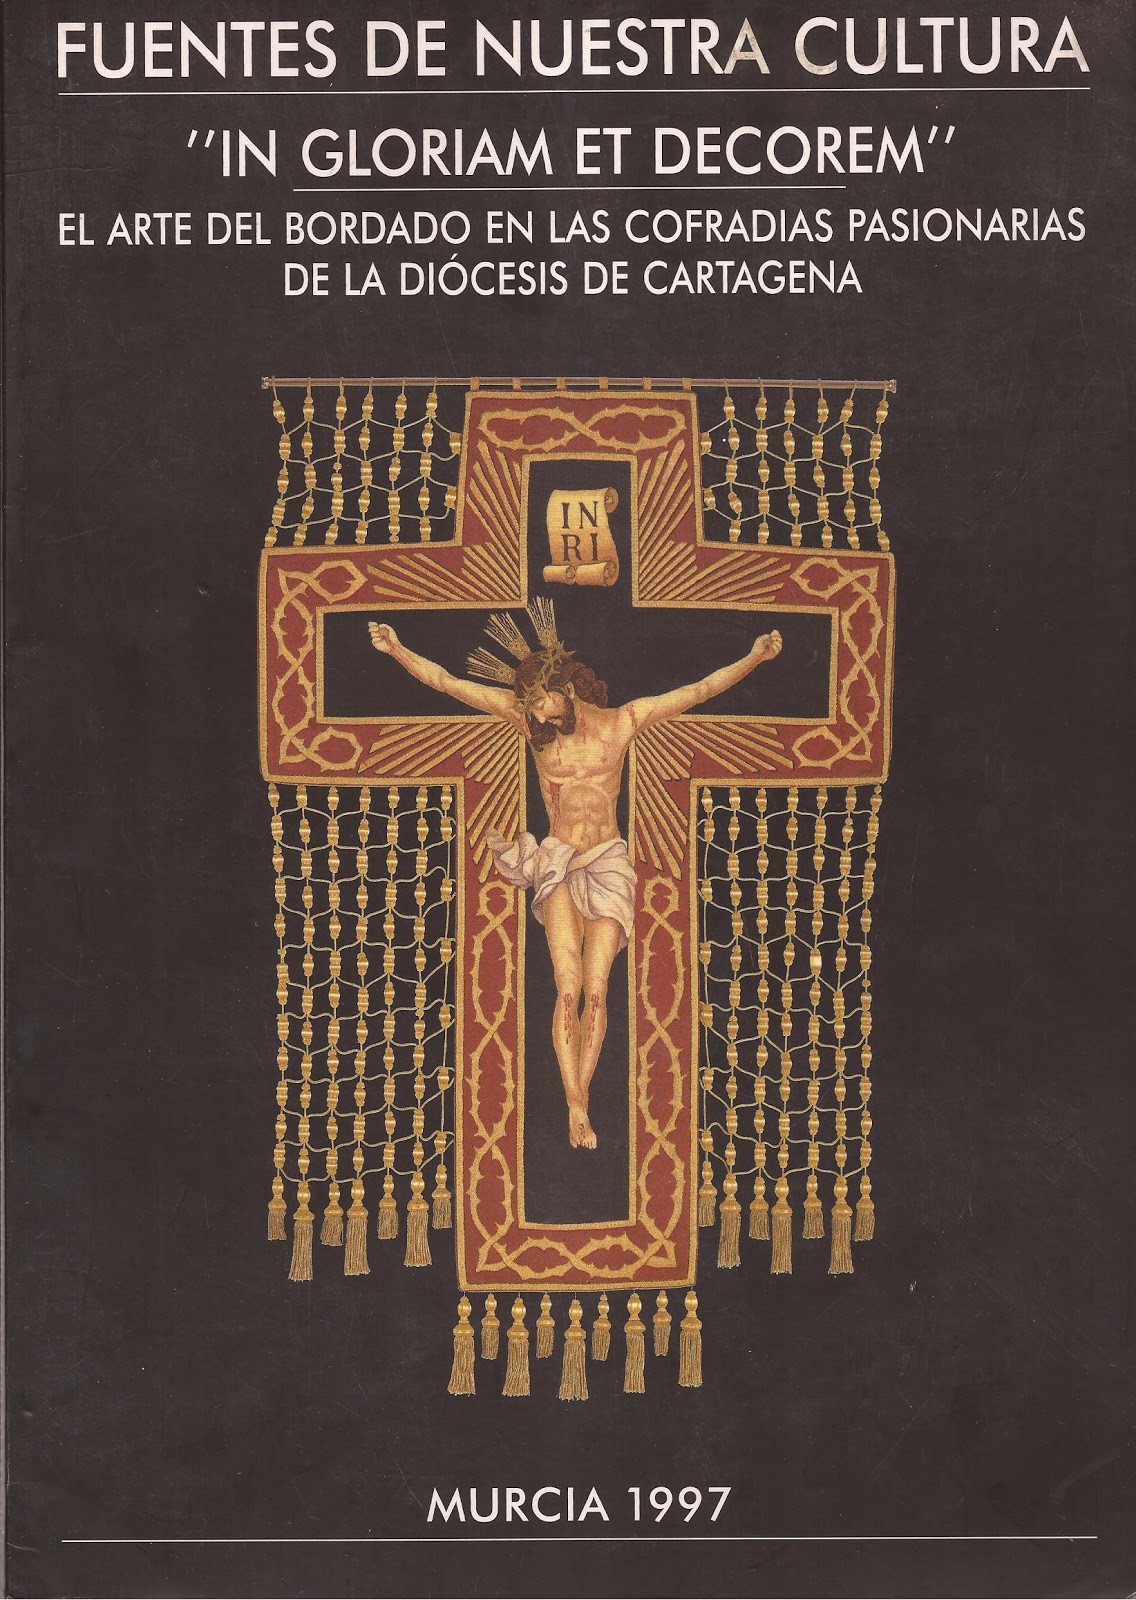 Imagen de portada del libro "In gloriam et decorem" : el arte del bordado en las cofradías pasionarias de la Diócesis de Cartagena